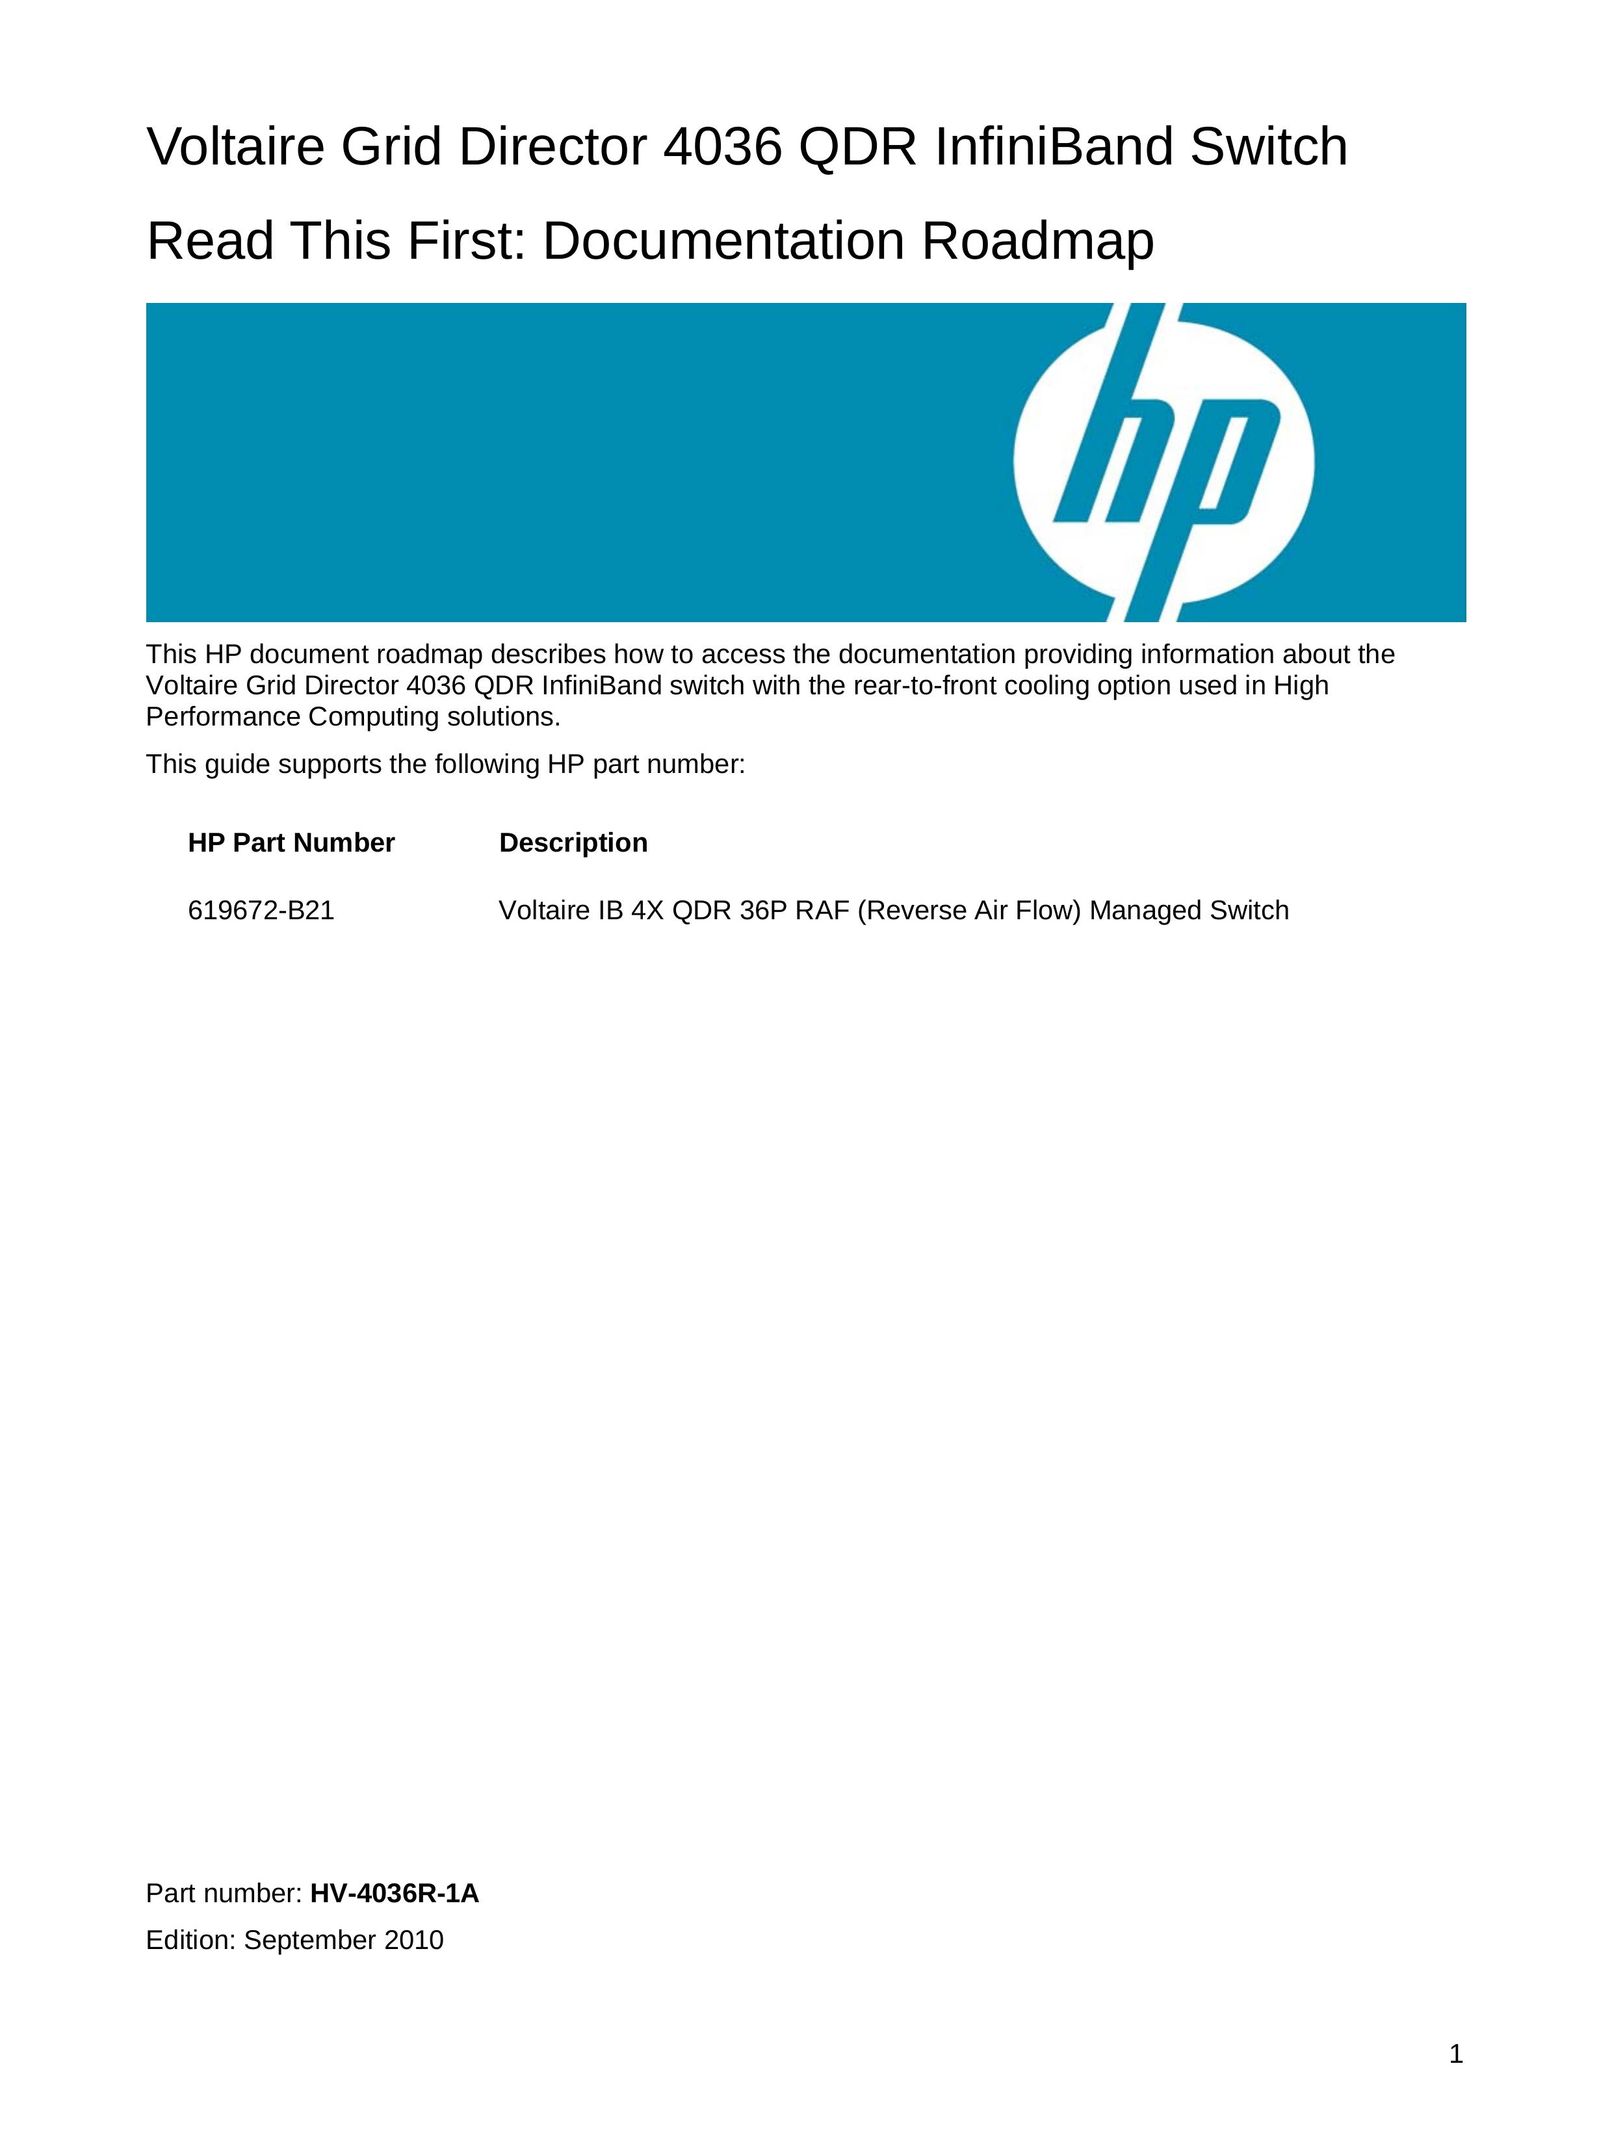 HP (Hewlett-Packard) 4036 QDR Computer Accessories User Manual